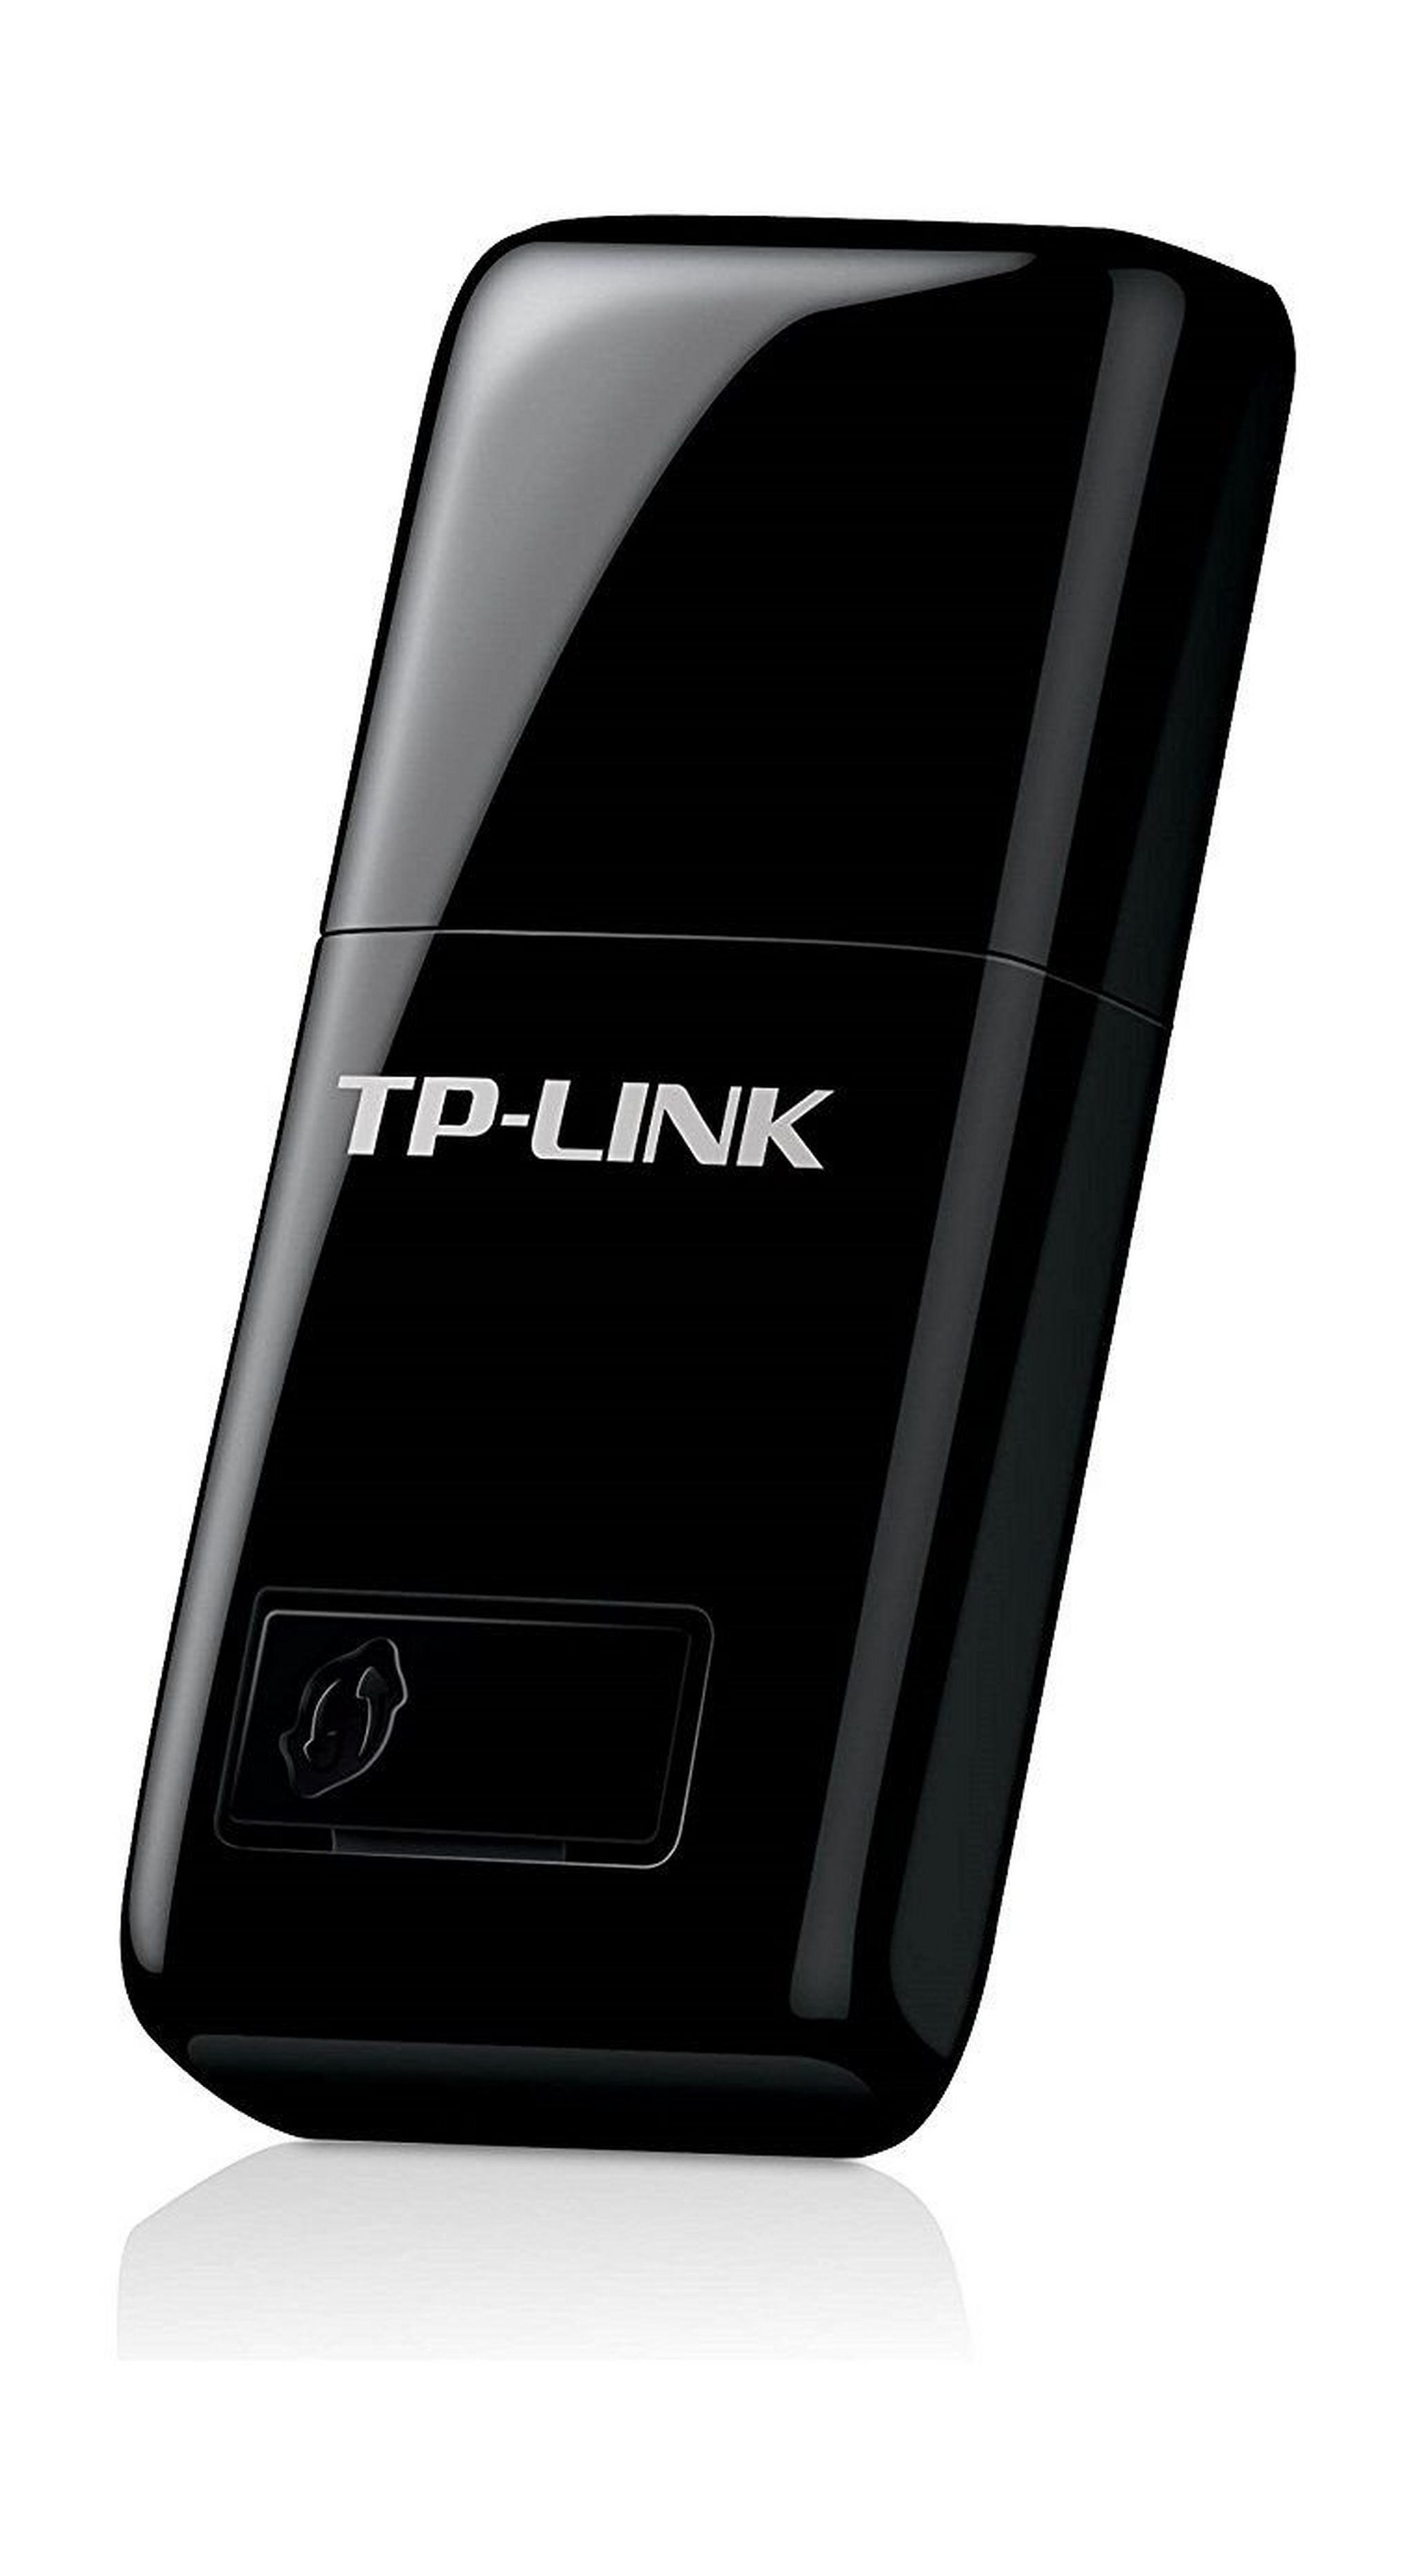 TP-Link N300 Wireless Mini USB Adapter, TL-WN823N - Black